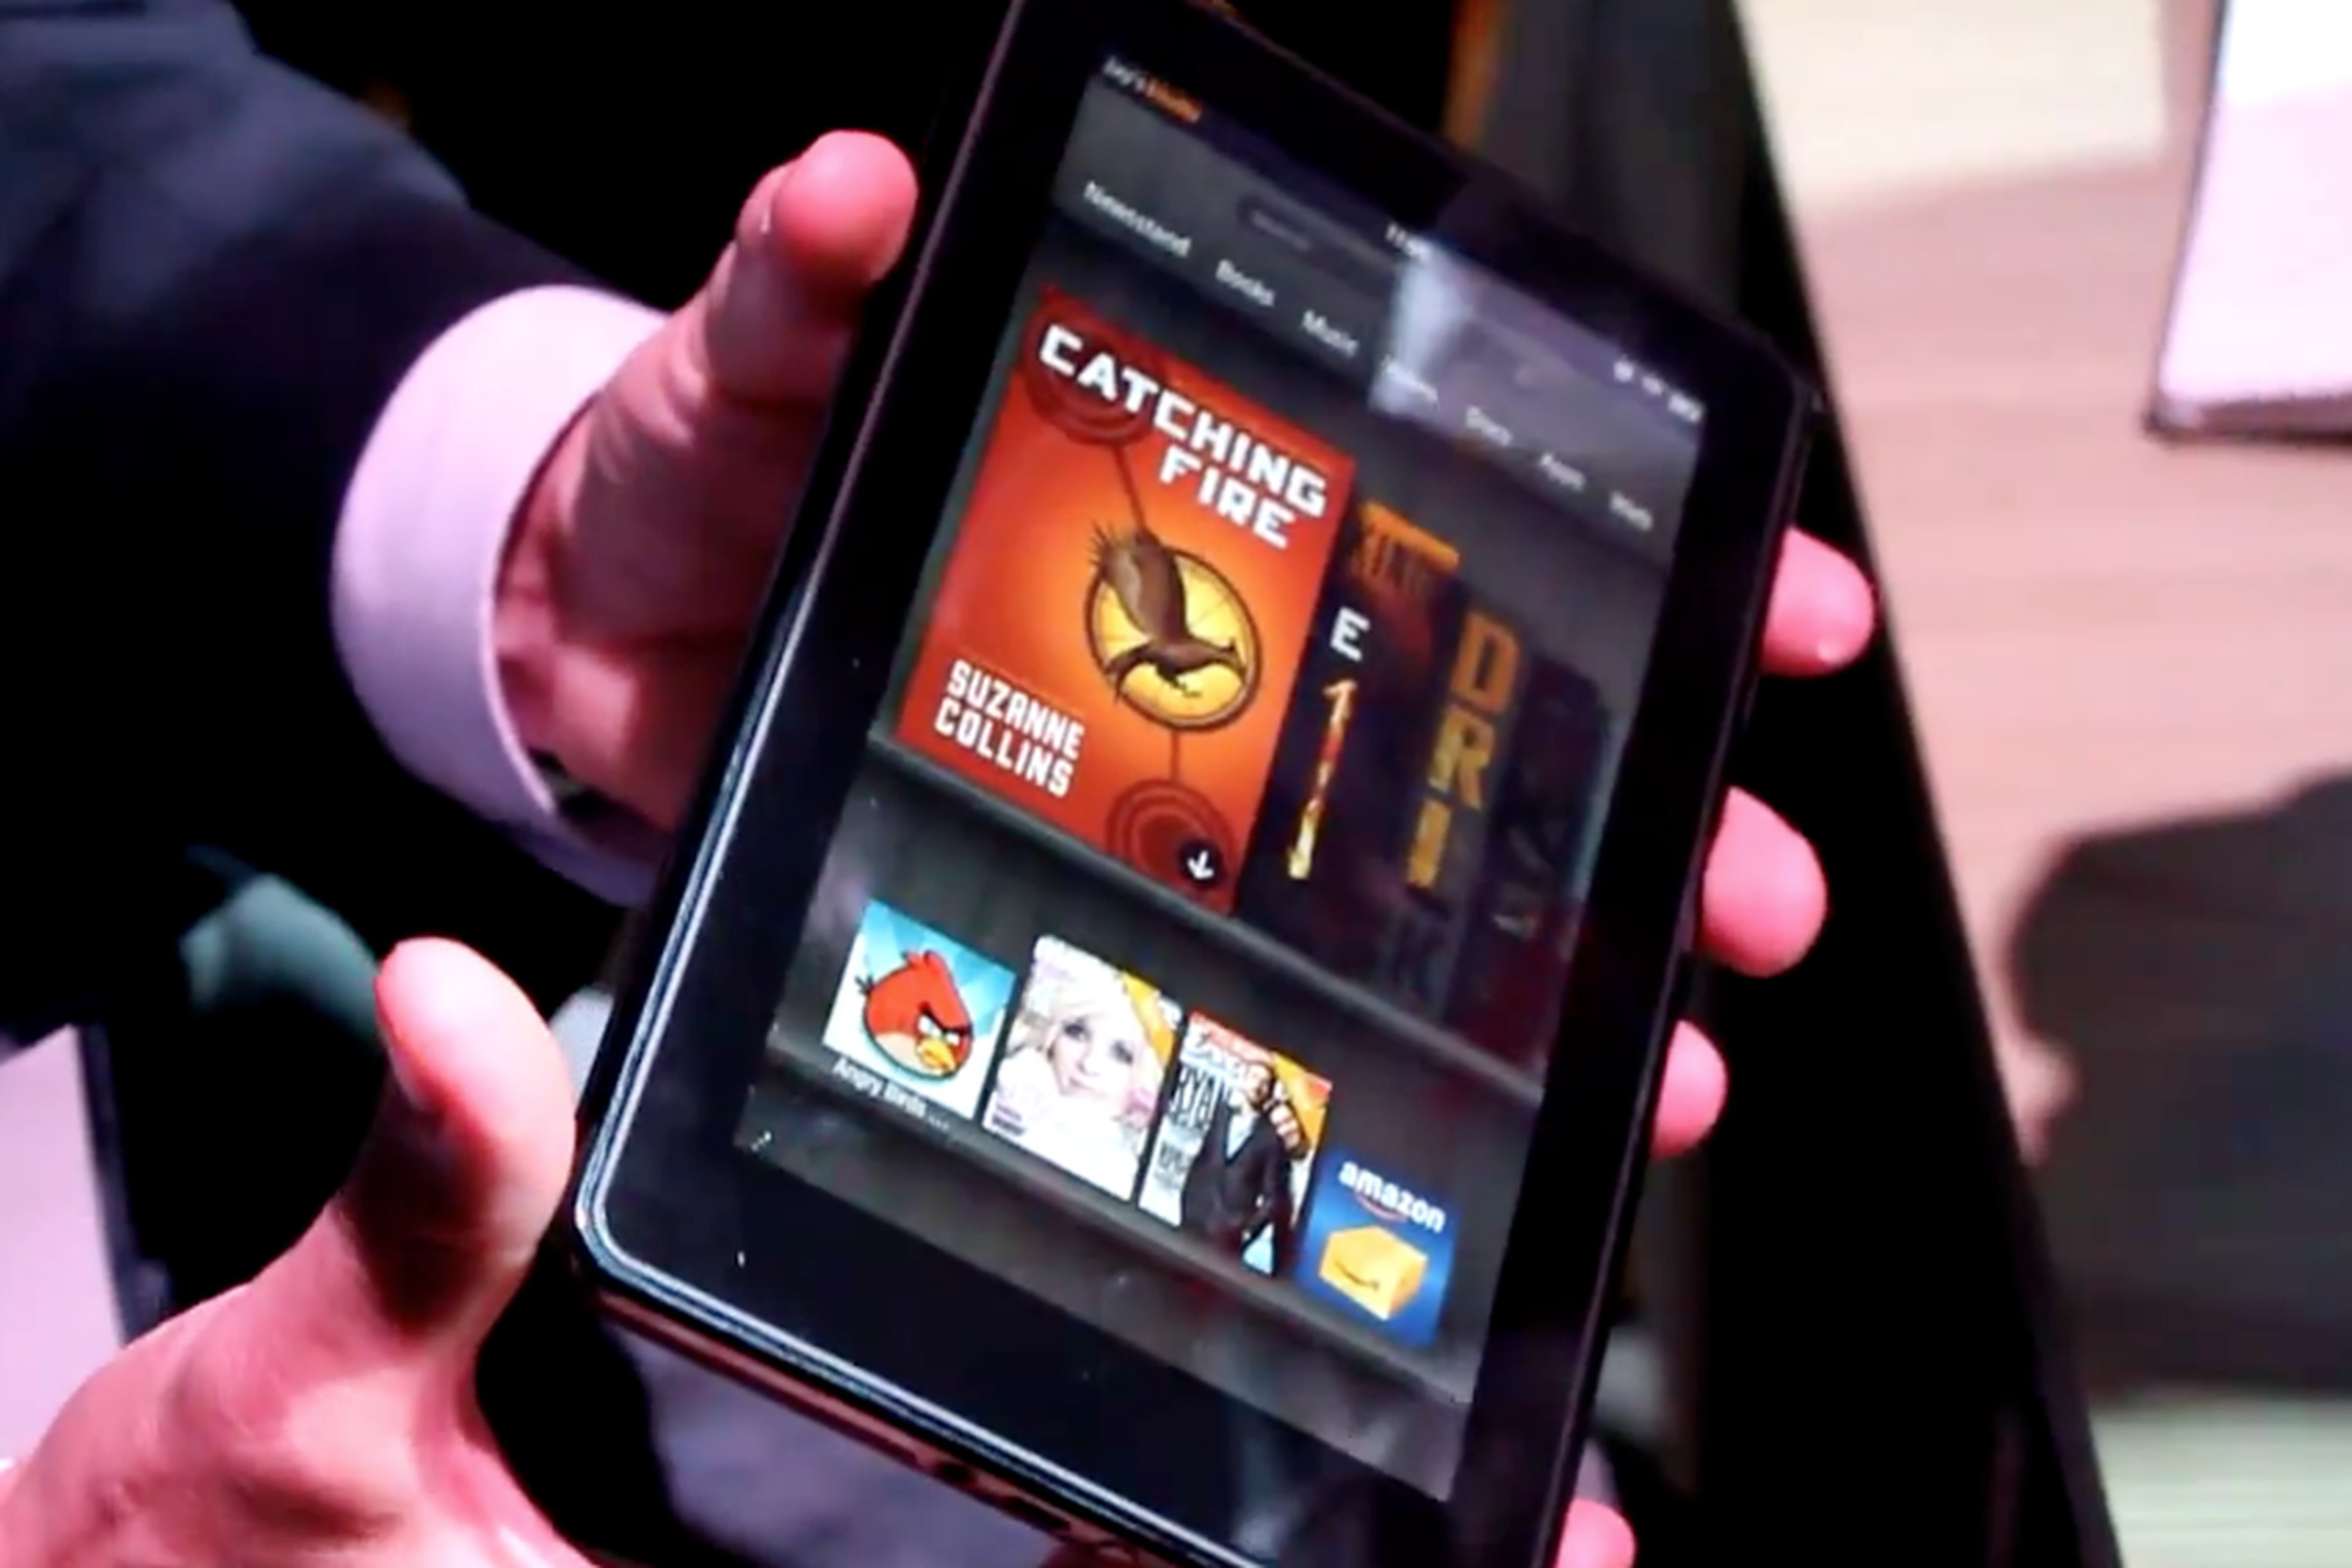 Amazon Kindle Fire hands-on